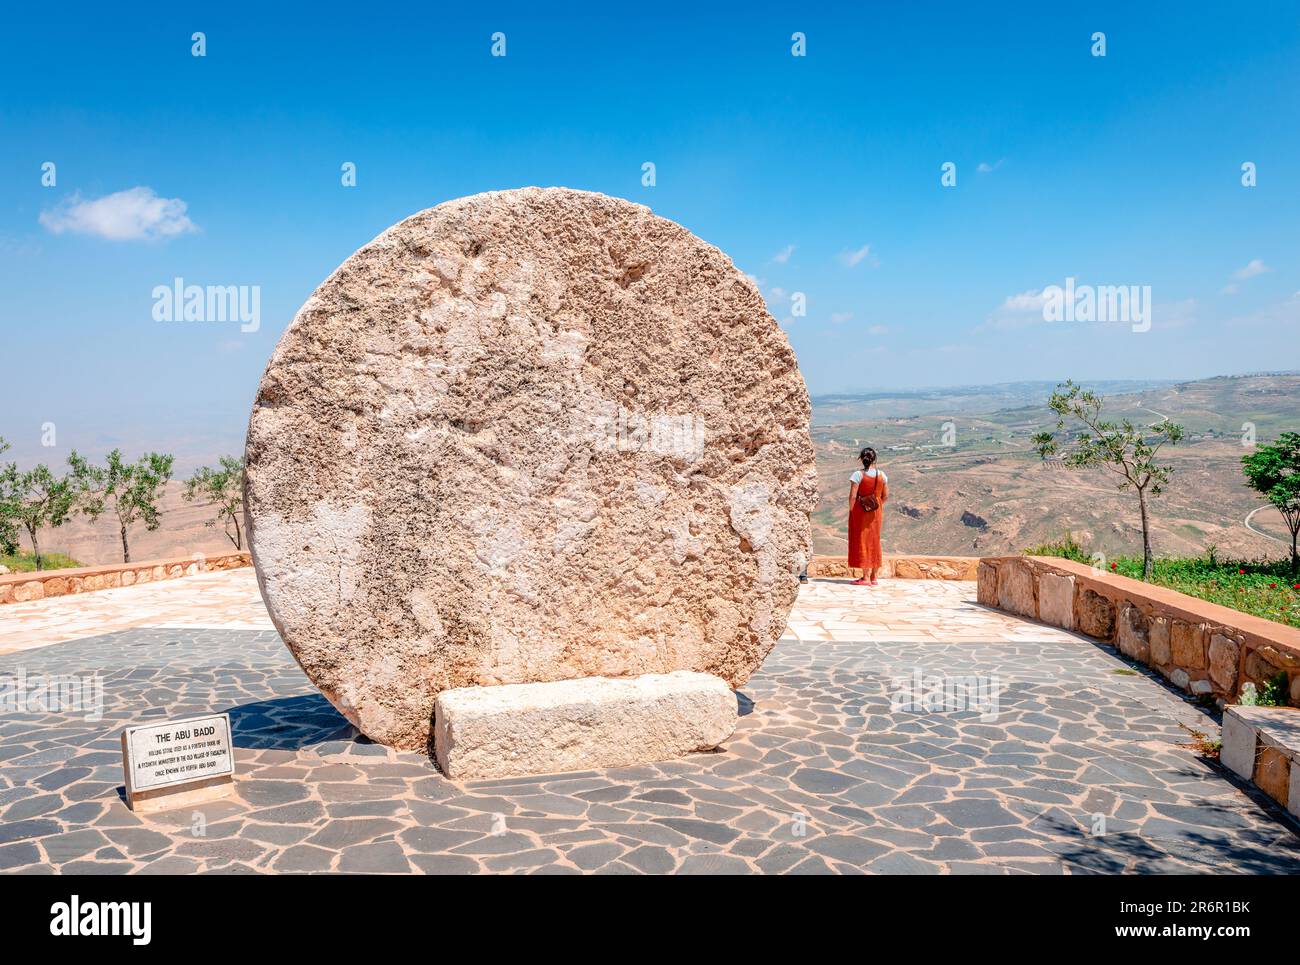 L'Abou Badd, une pierre à roulettes utilisée comme porte fortifiée d'un monastère byzantin dans le vieux village de Faisaliyah. Femme non identifiée appréciant la vue Banque D'Images